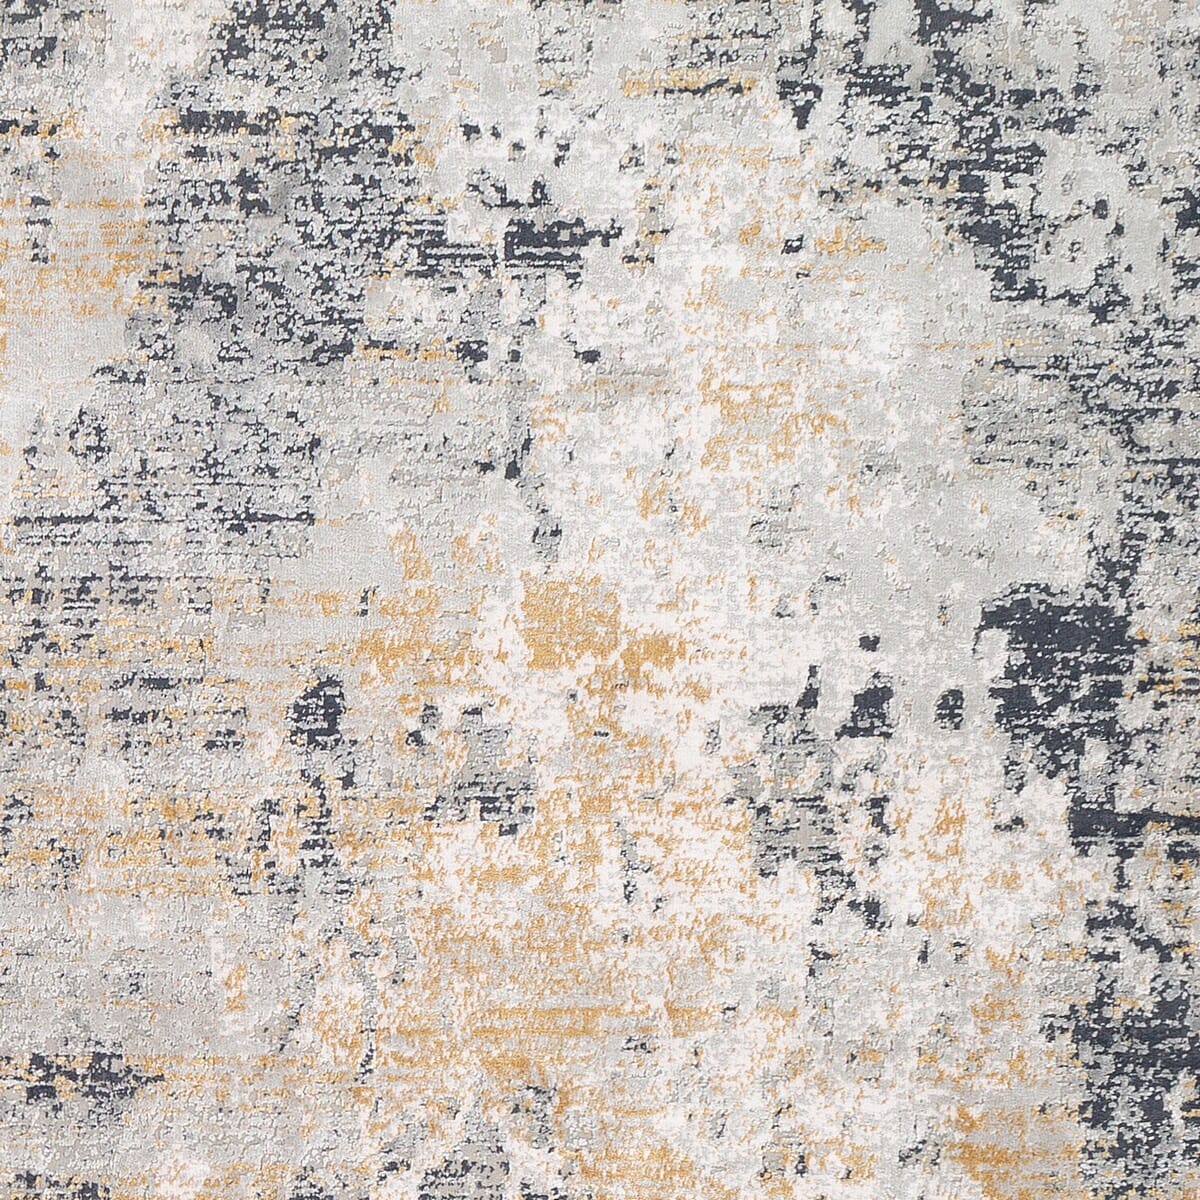 Surya Milano Mln-2303 Light Gray, Charcoal, Tan Organic / Abstract Area Rug